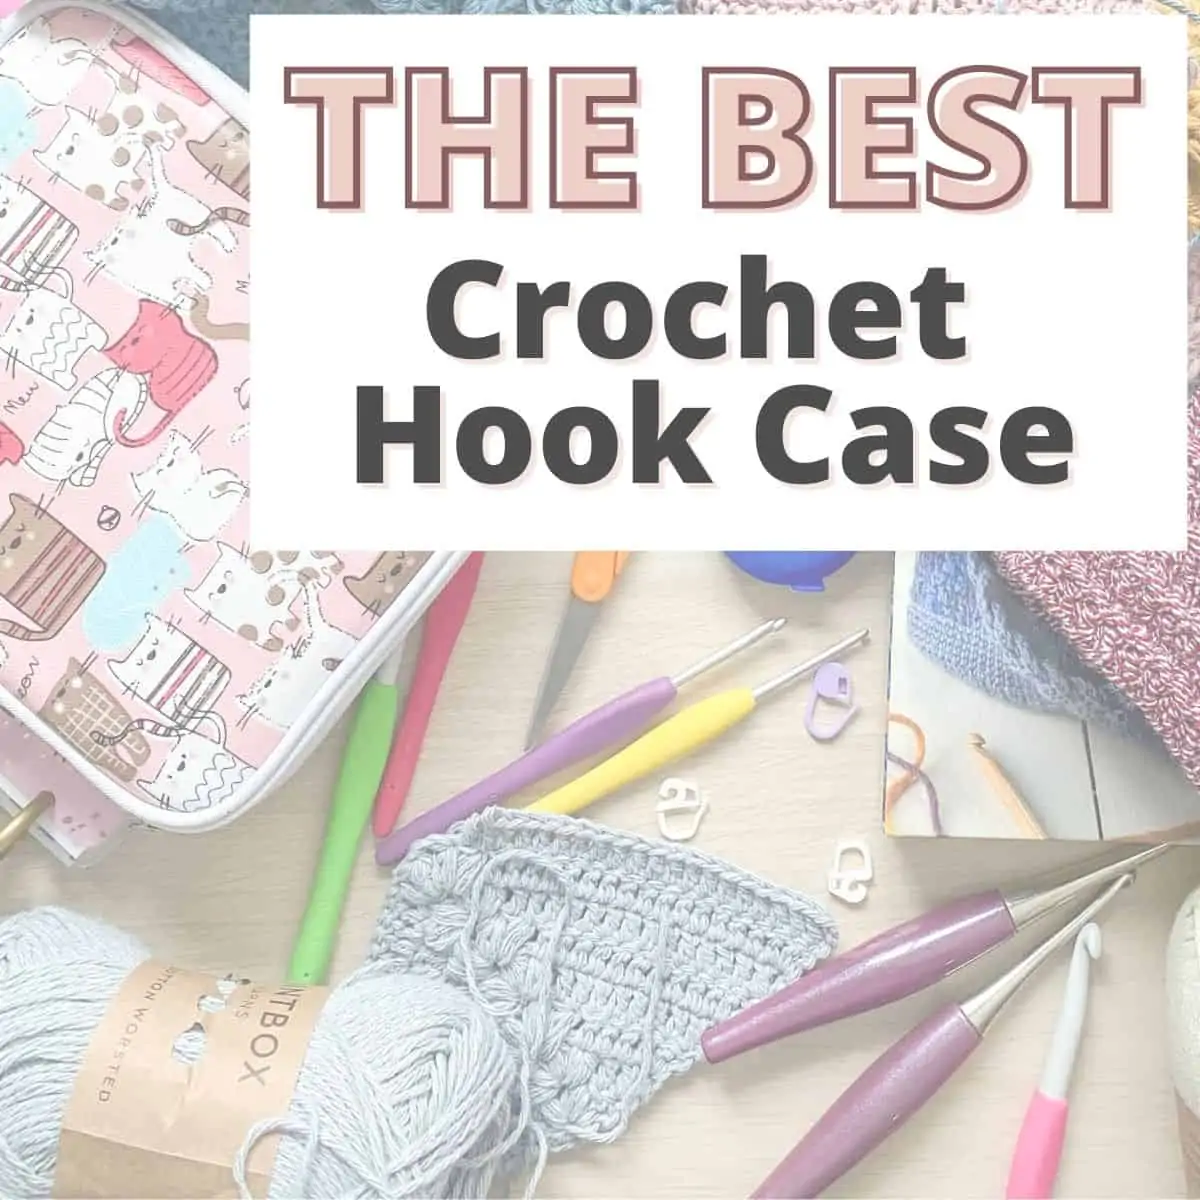 Crochet Hook Case for sale